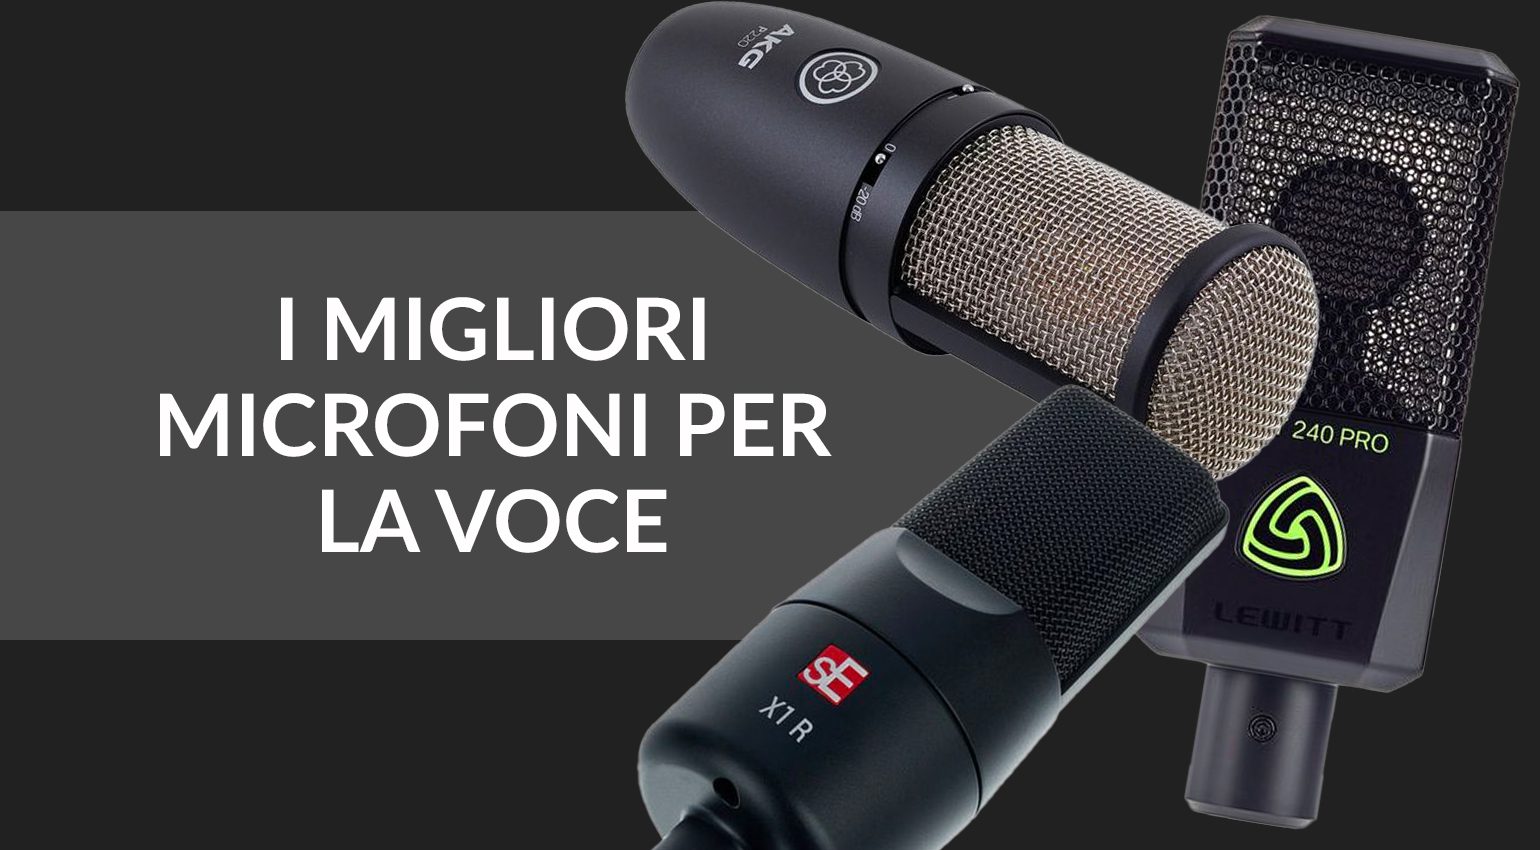 I migliori microfoni per registrare la voce a meno di 250 euro